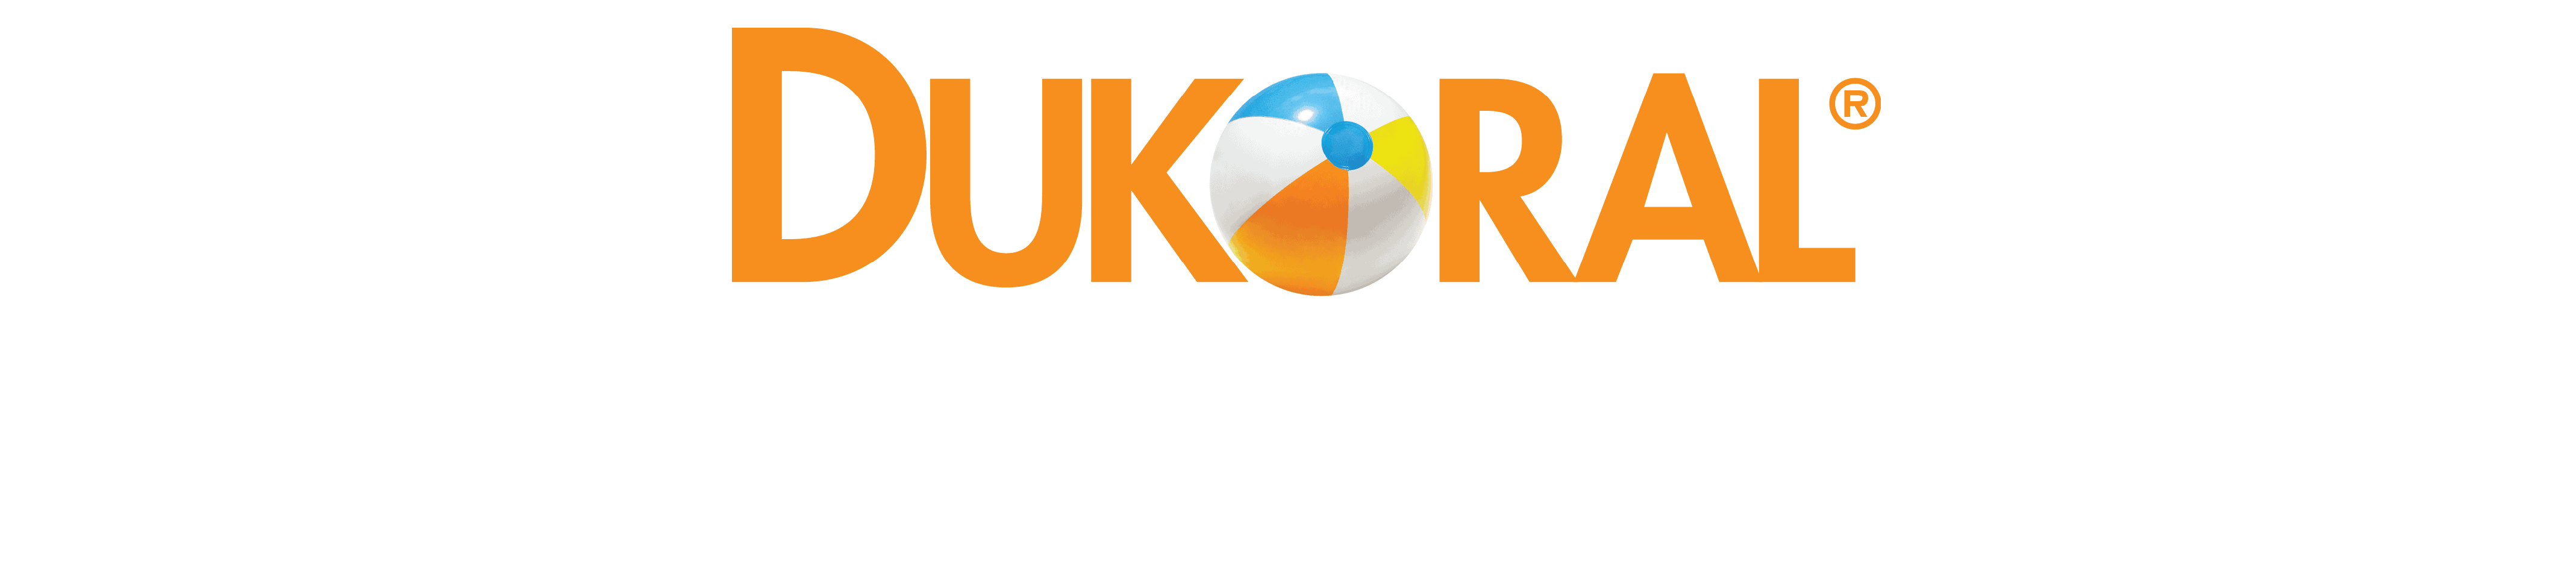 dukoral logo